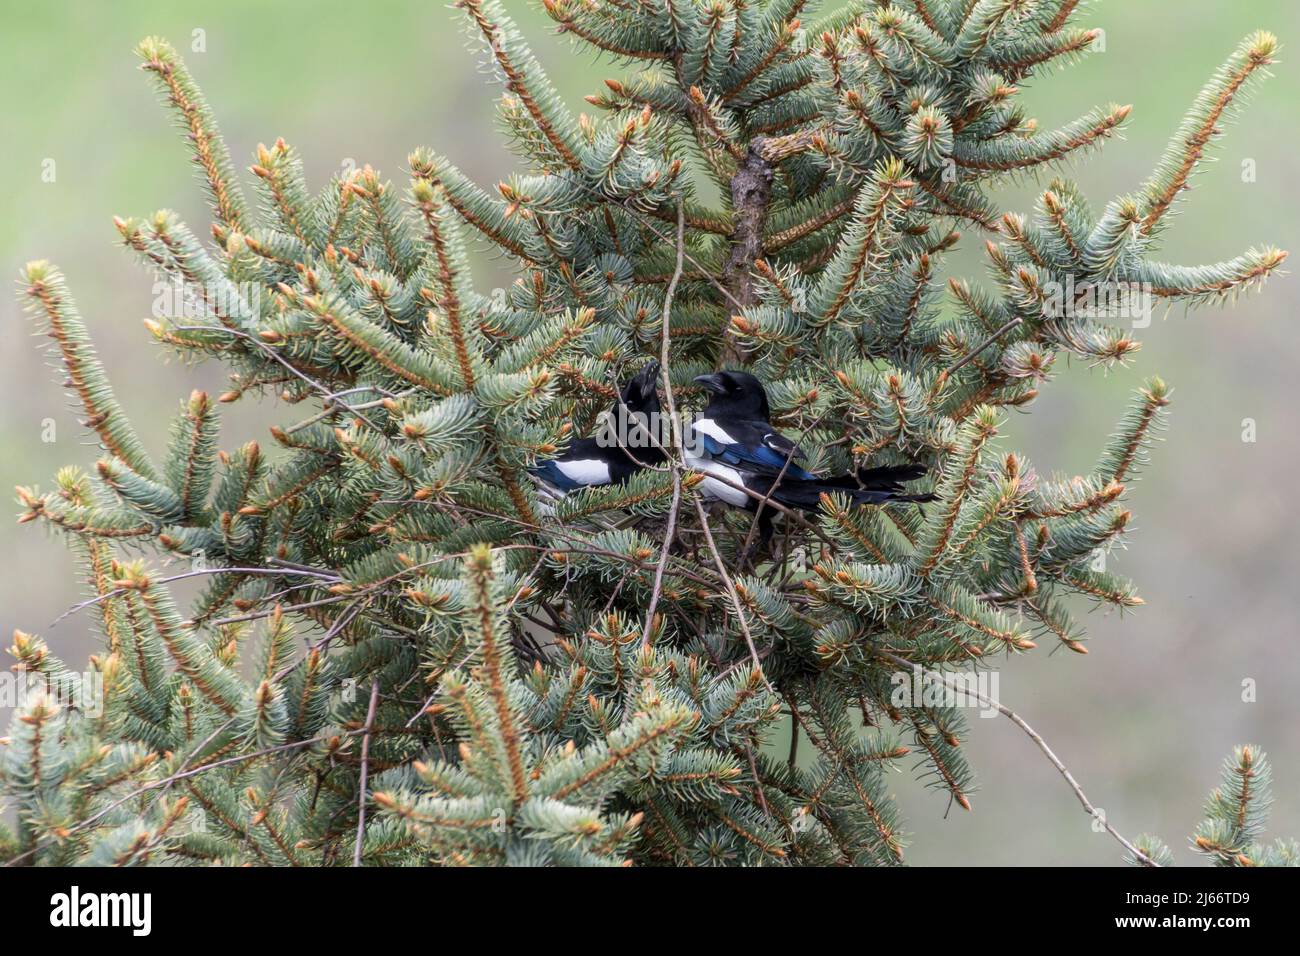 Maggini eurasiatici, maggini comuni (Pica pica) costruiscono un nido nella parte superiore di un albero di abete rosso Foto Stock